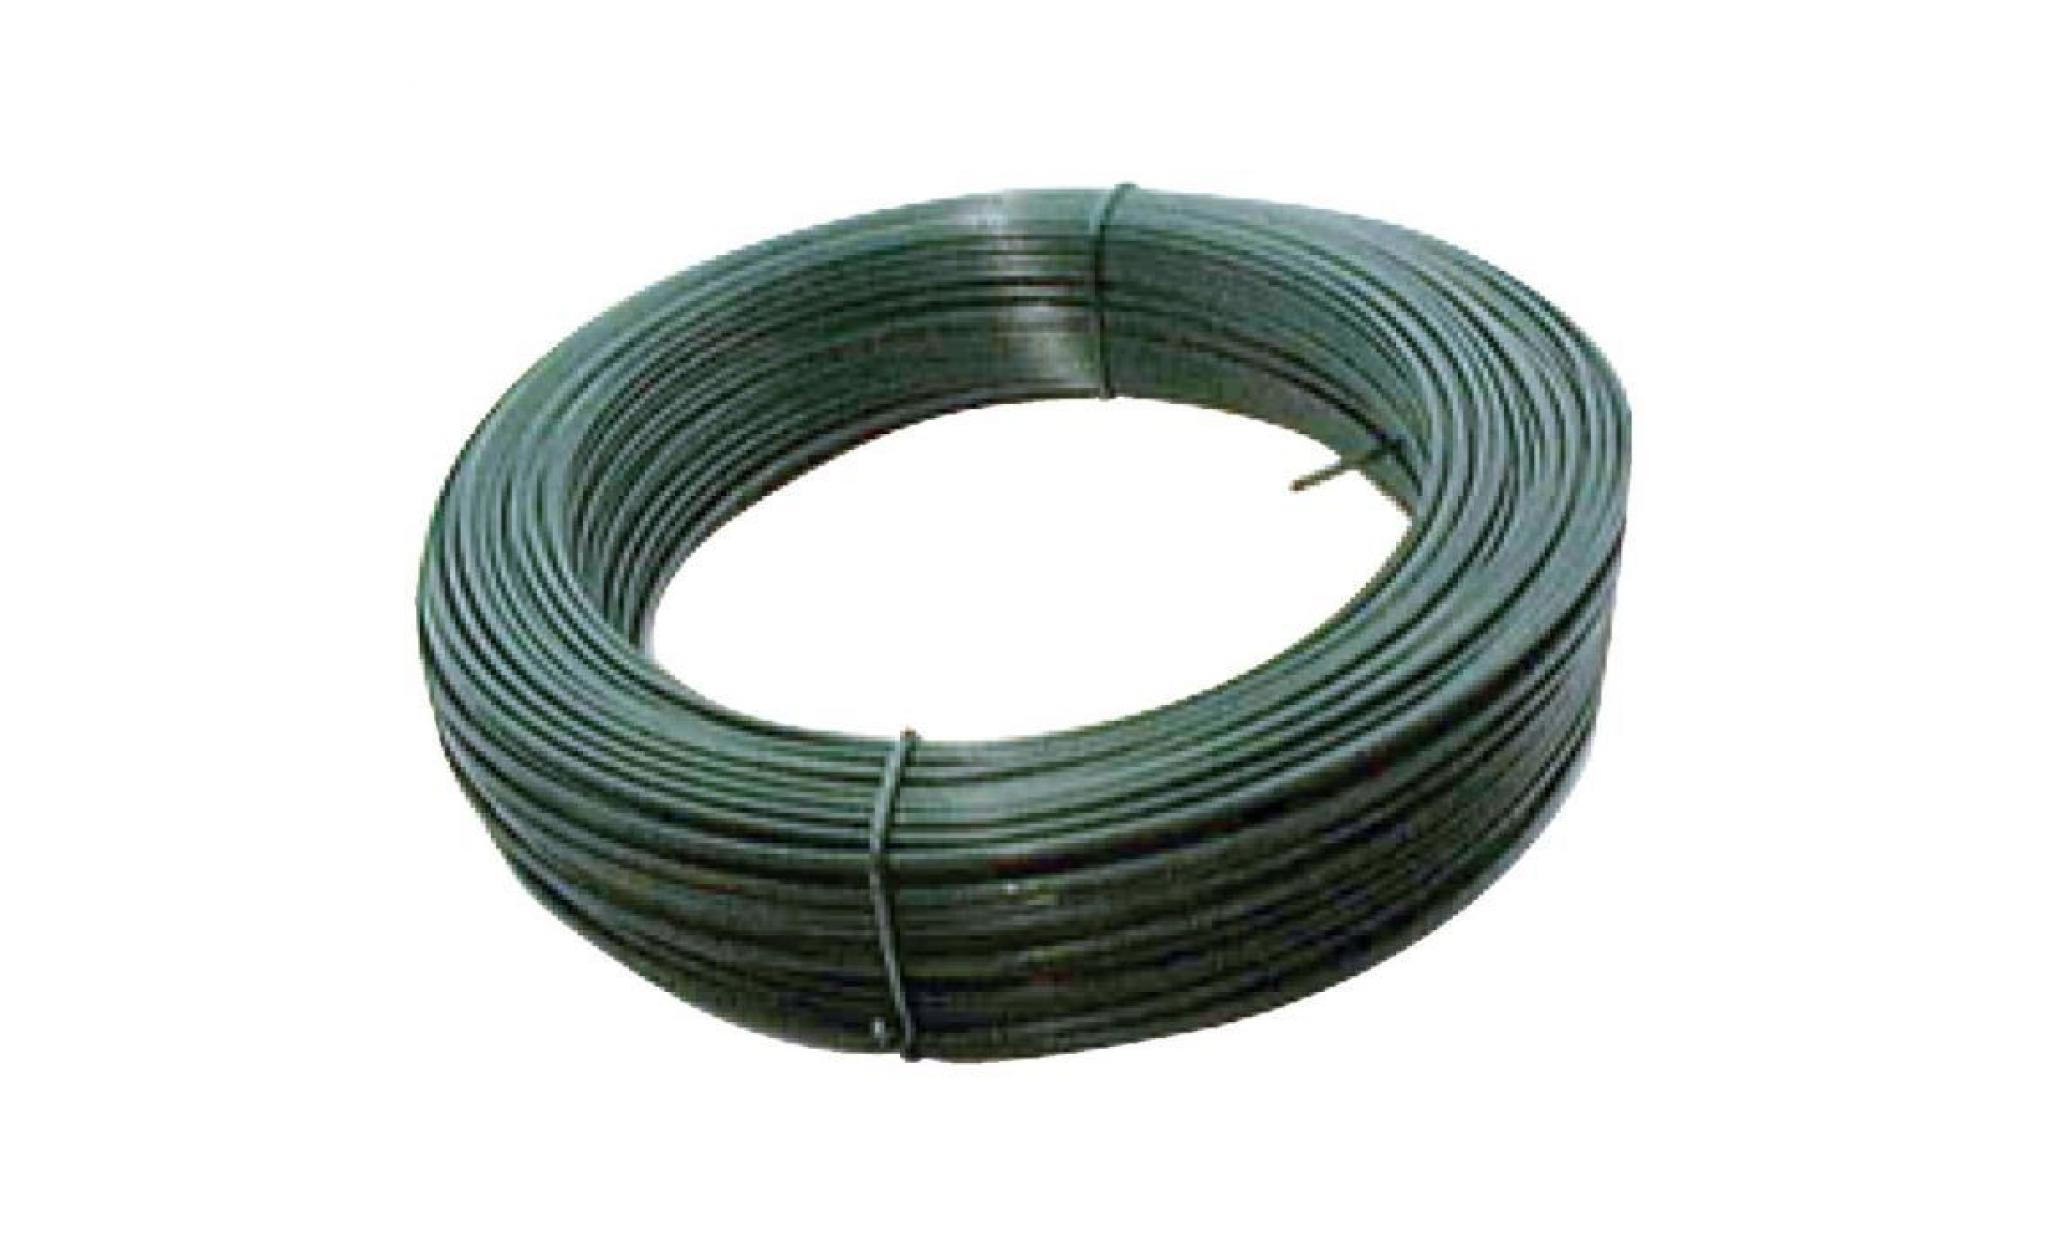 fil de tension galvanisé plastifié   longueur 100 m   diamètre 2,7 mm   vert